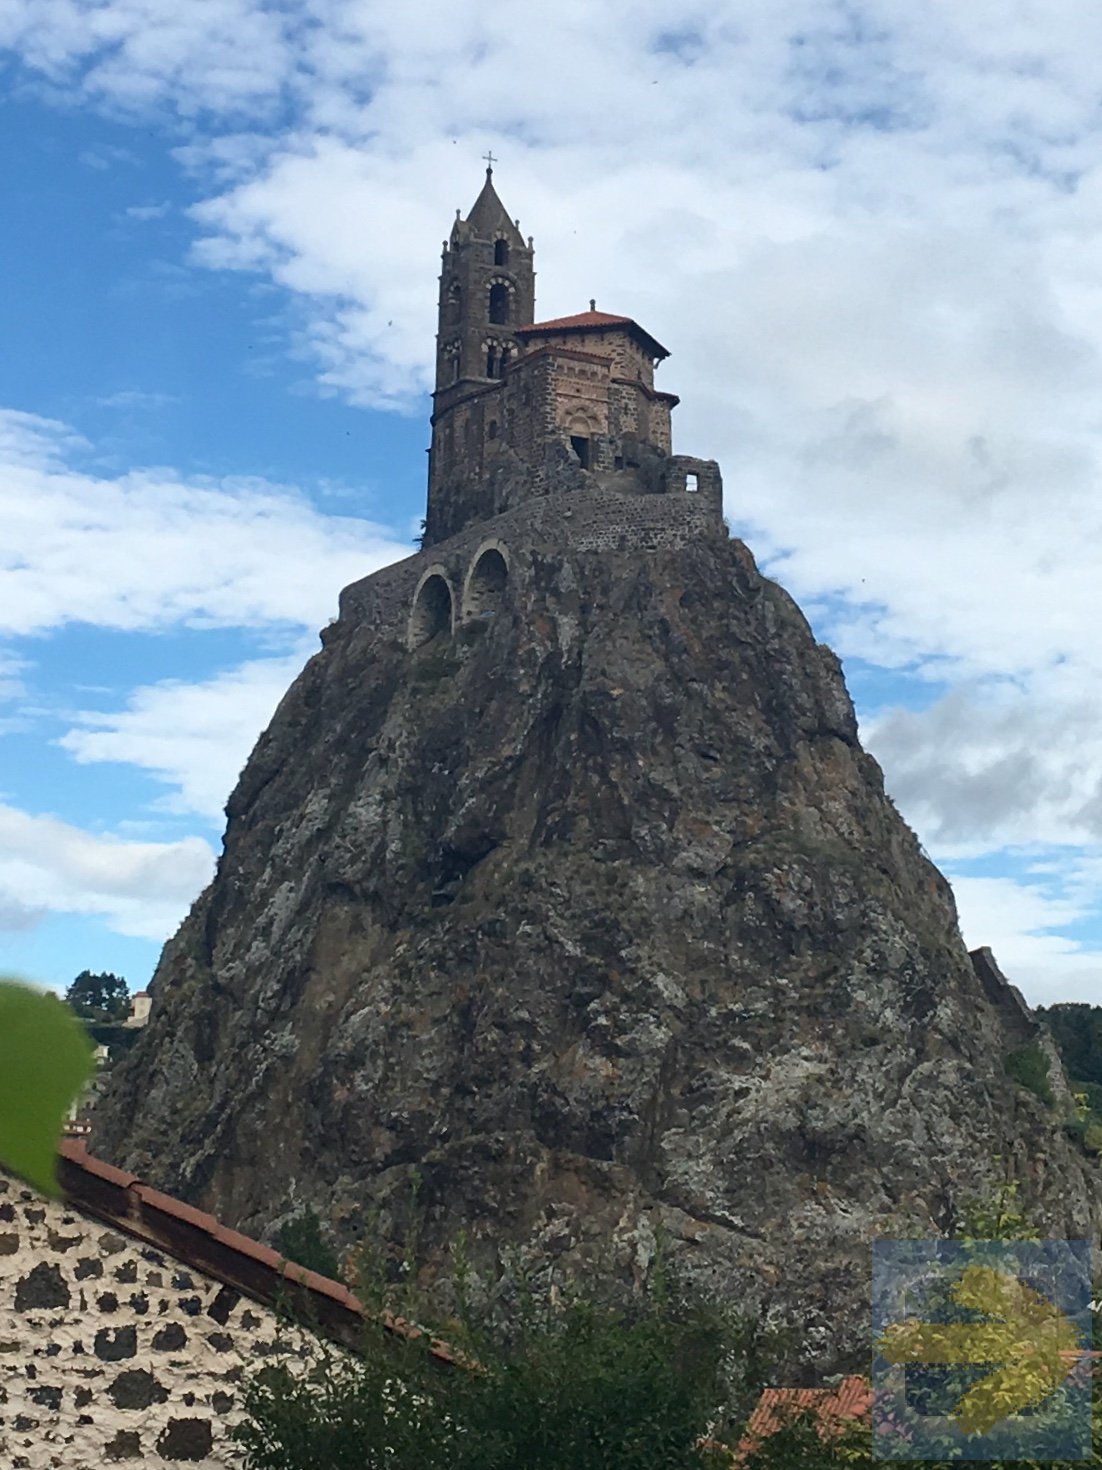 Le Puy:  Chappelle Saint Michel atop volcanic rock